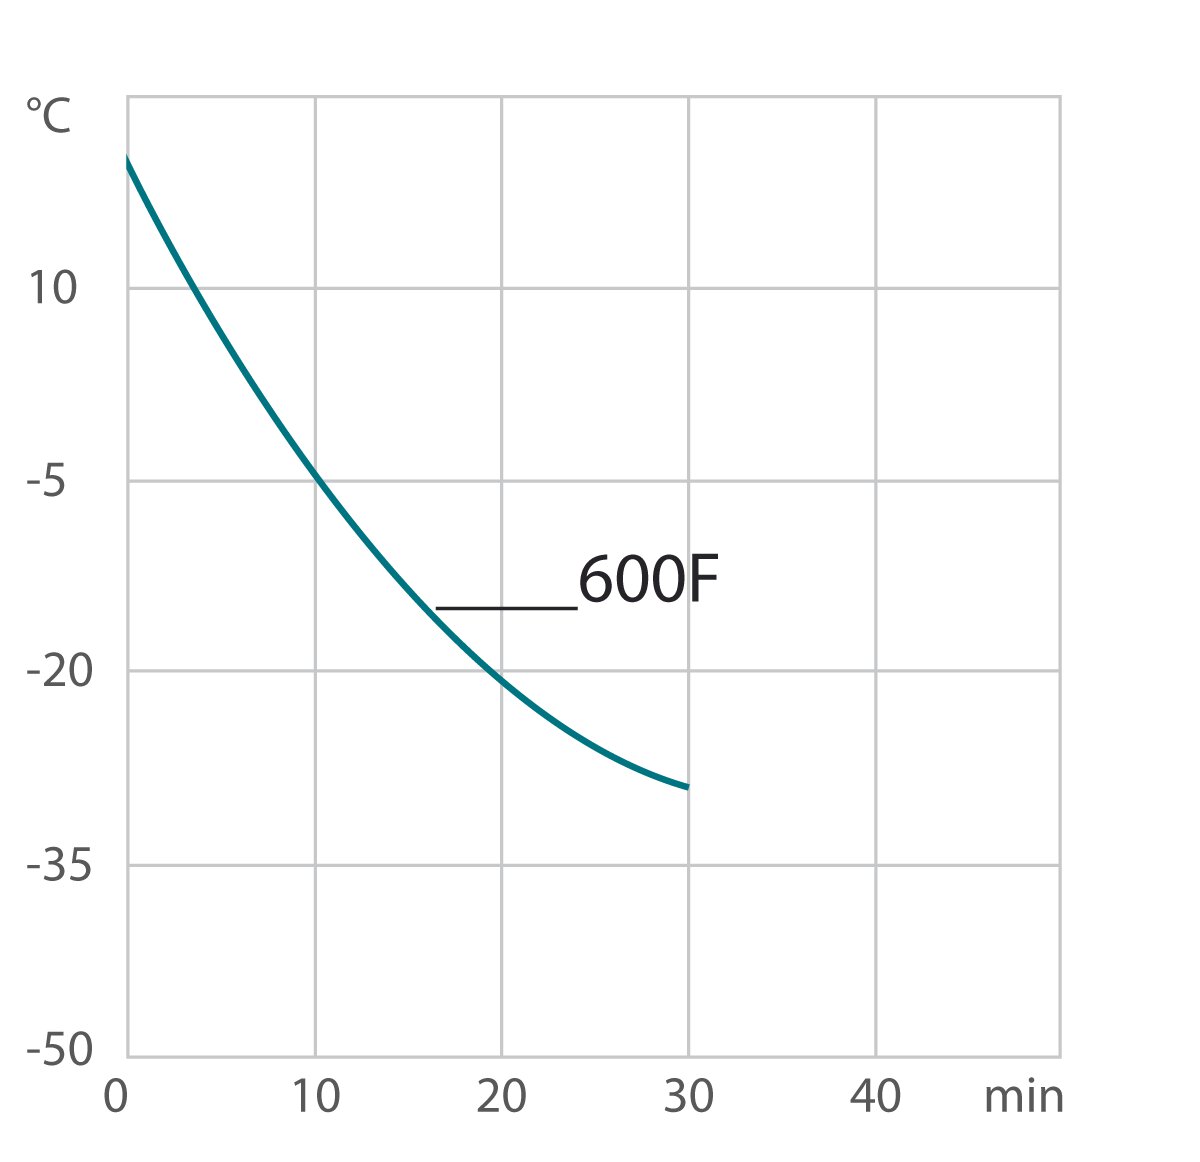 Curva di raffreddamento 600F